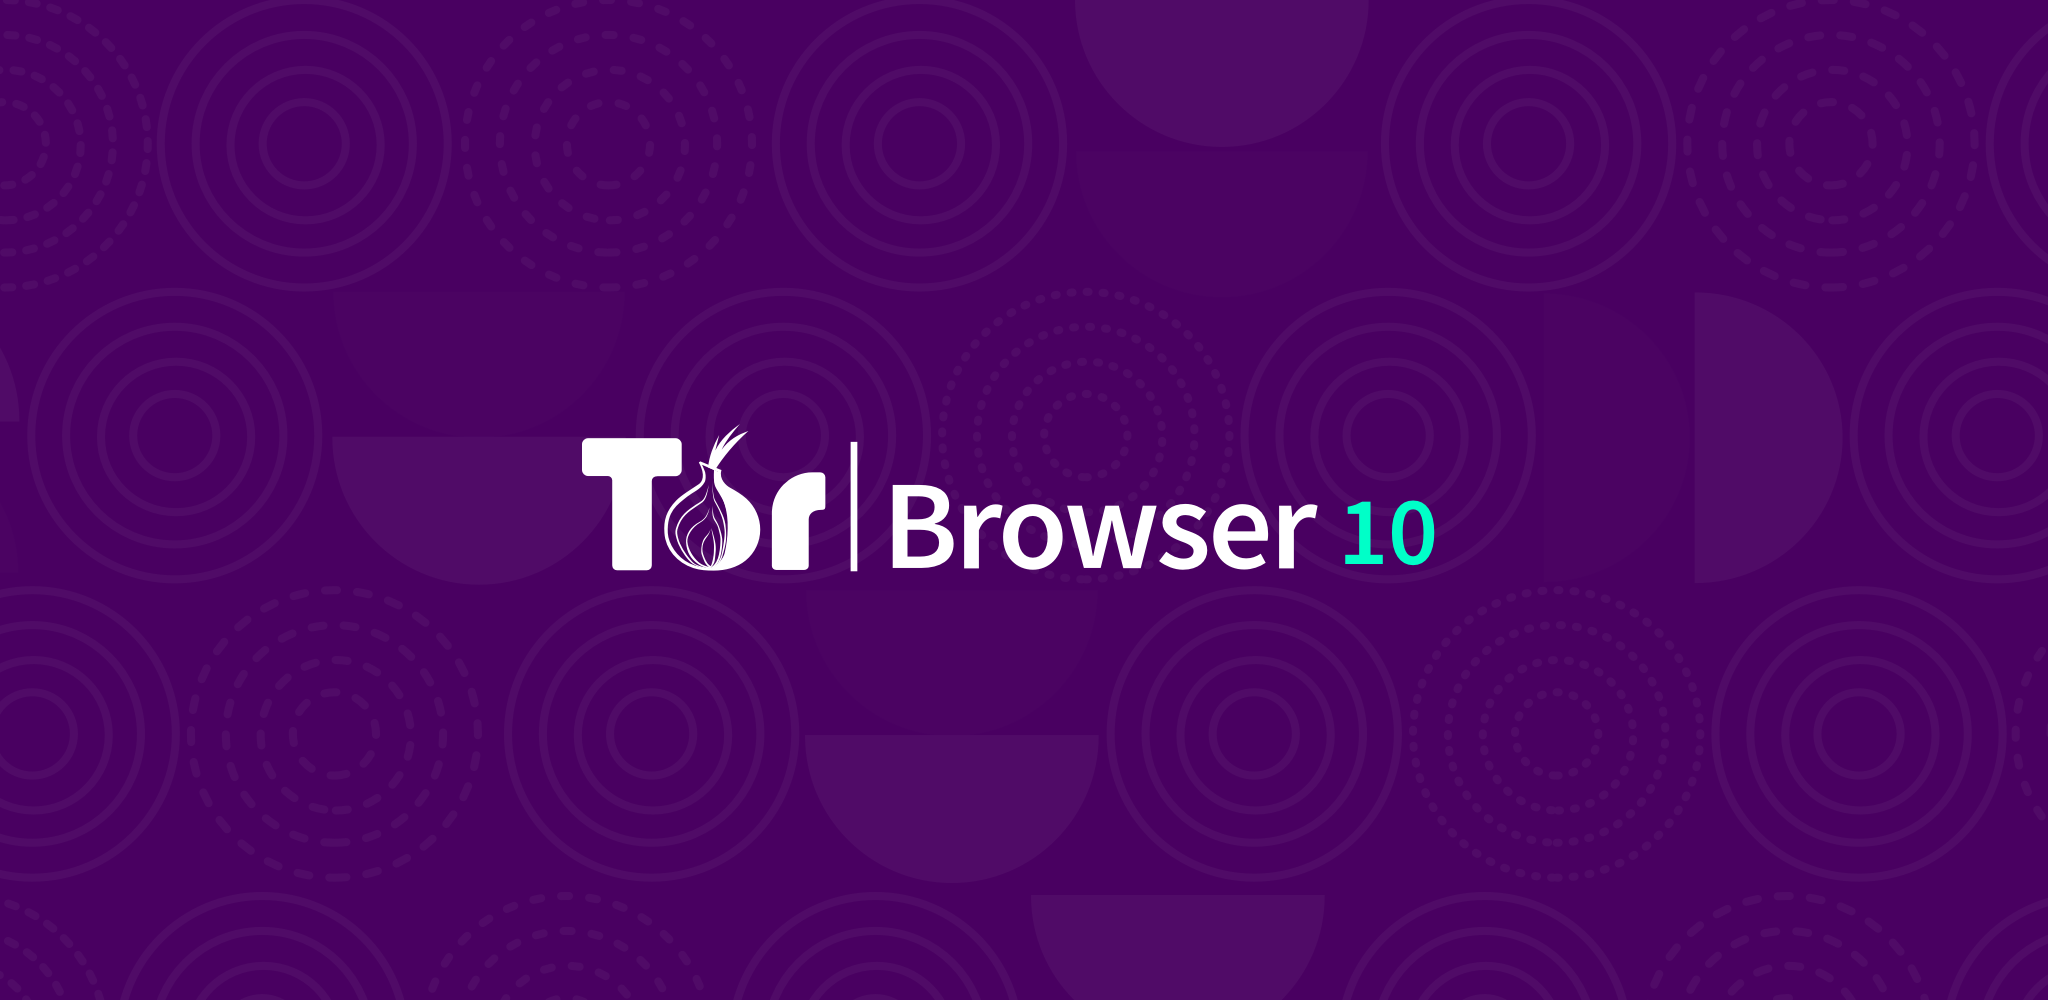 Tor browser mint 17 gidra можно ли скачать бесплатно книги из darknet hyrda вход